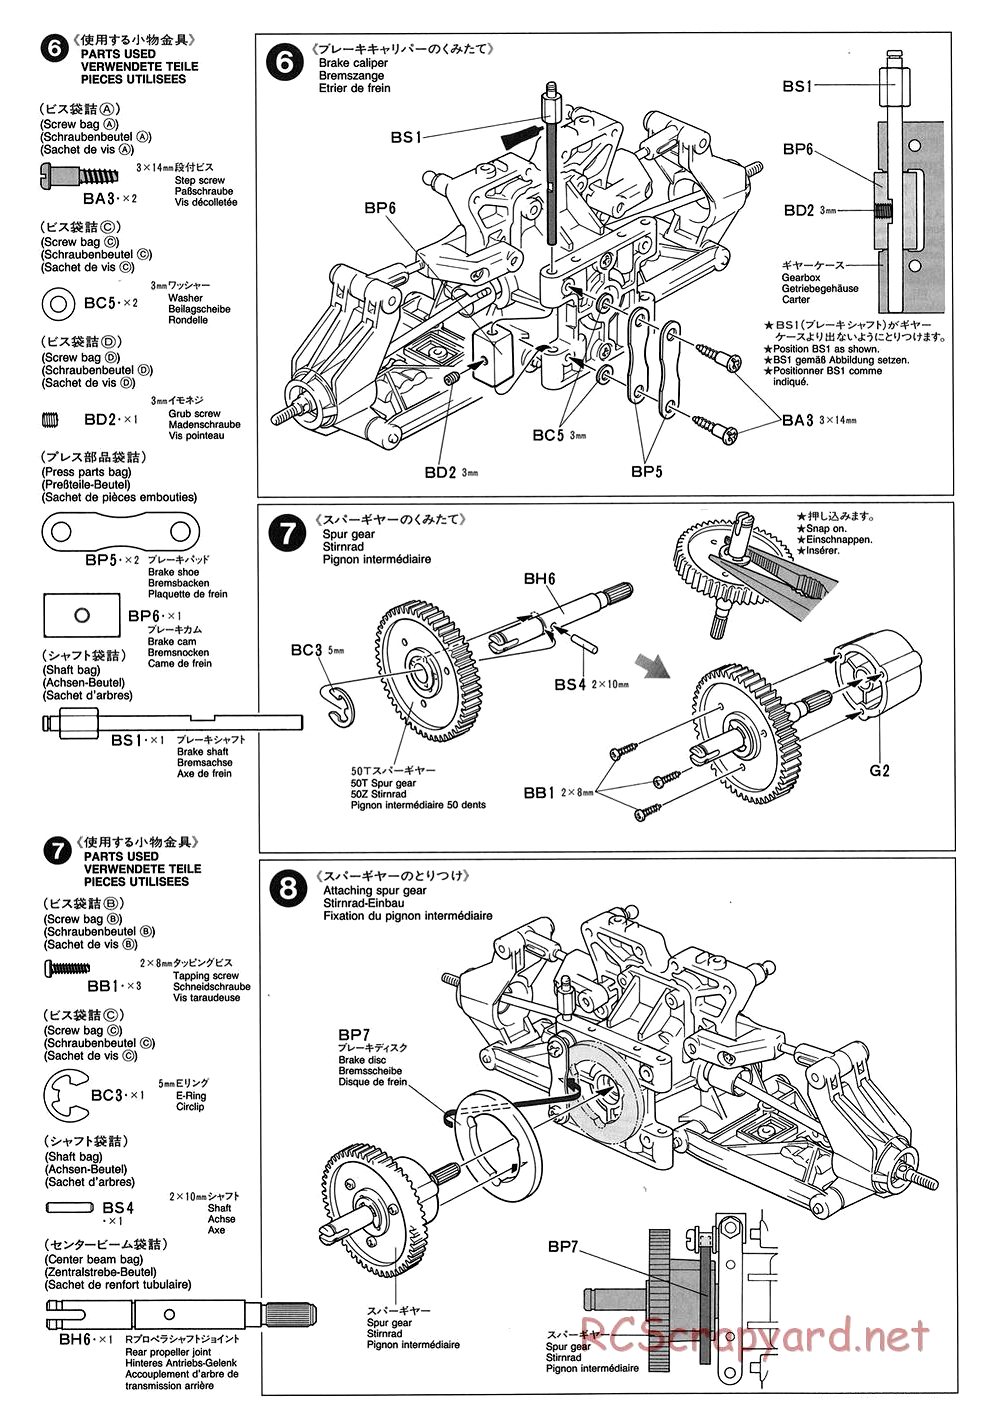 Tamiya - TGX Mk.1 Chassis - Manual - Page 6